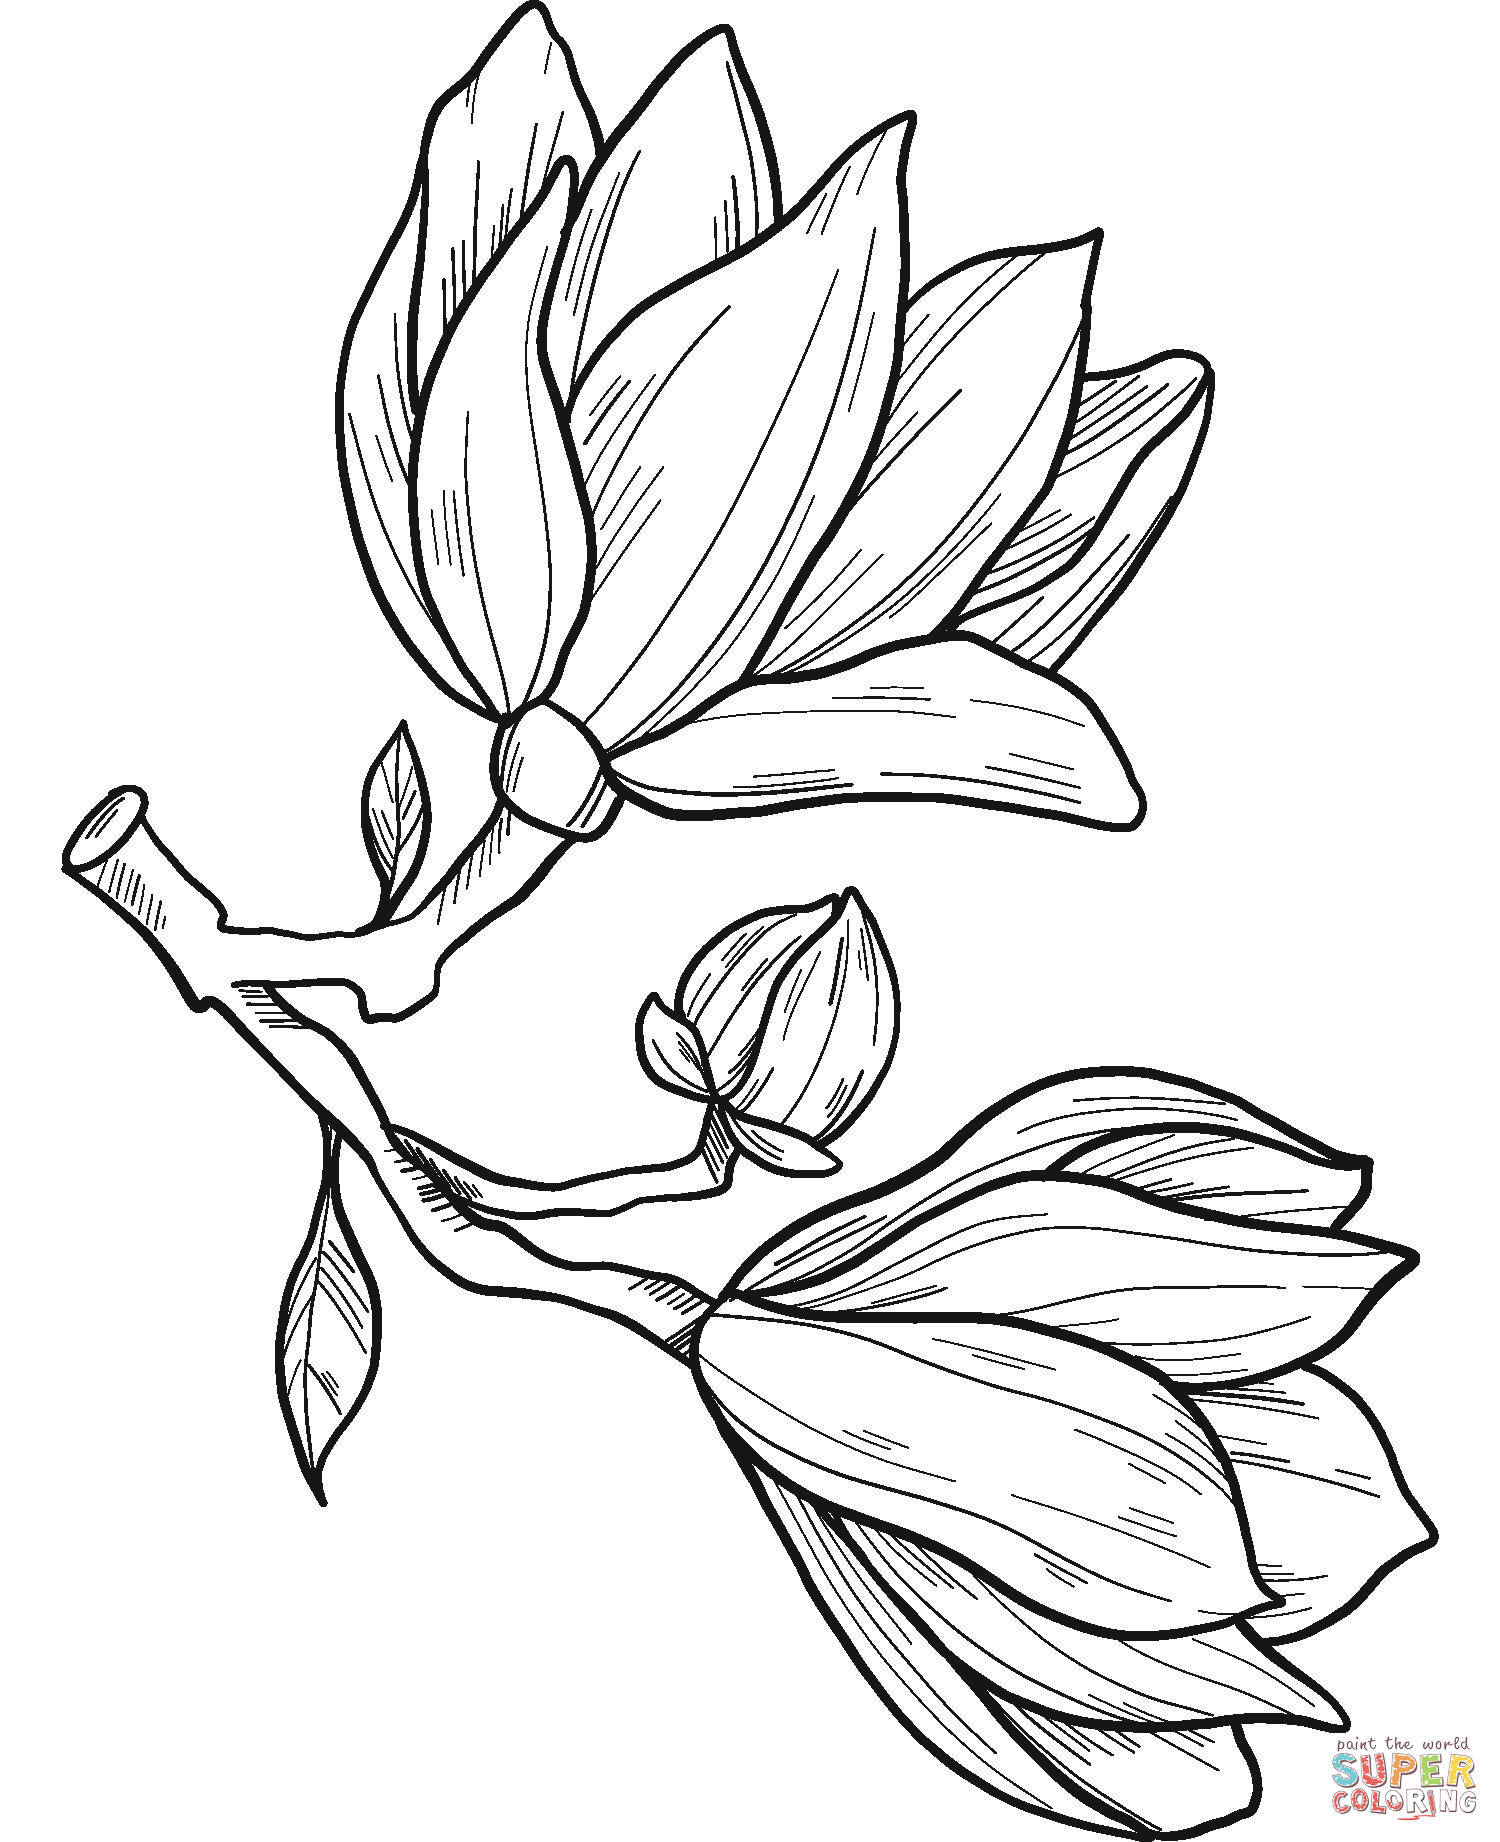 زهور ماغنوليا من ماغنوليا